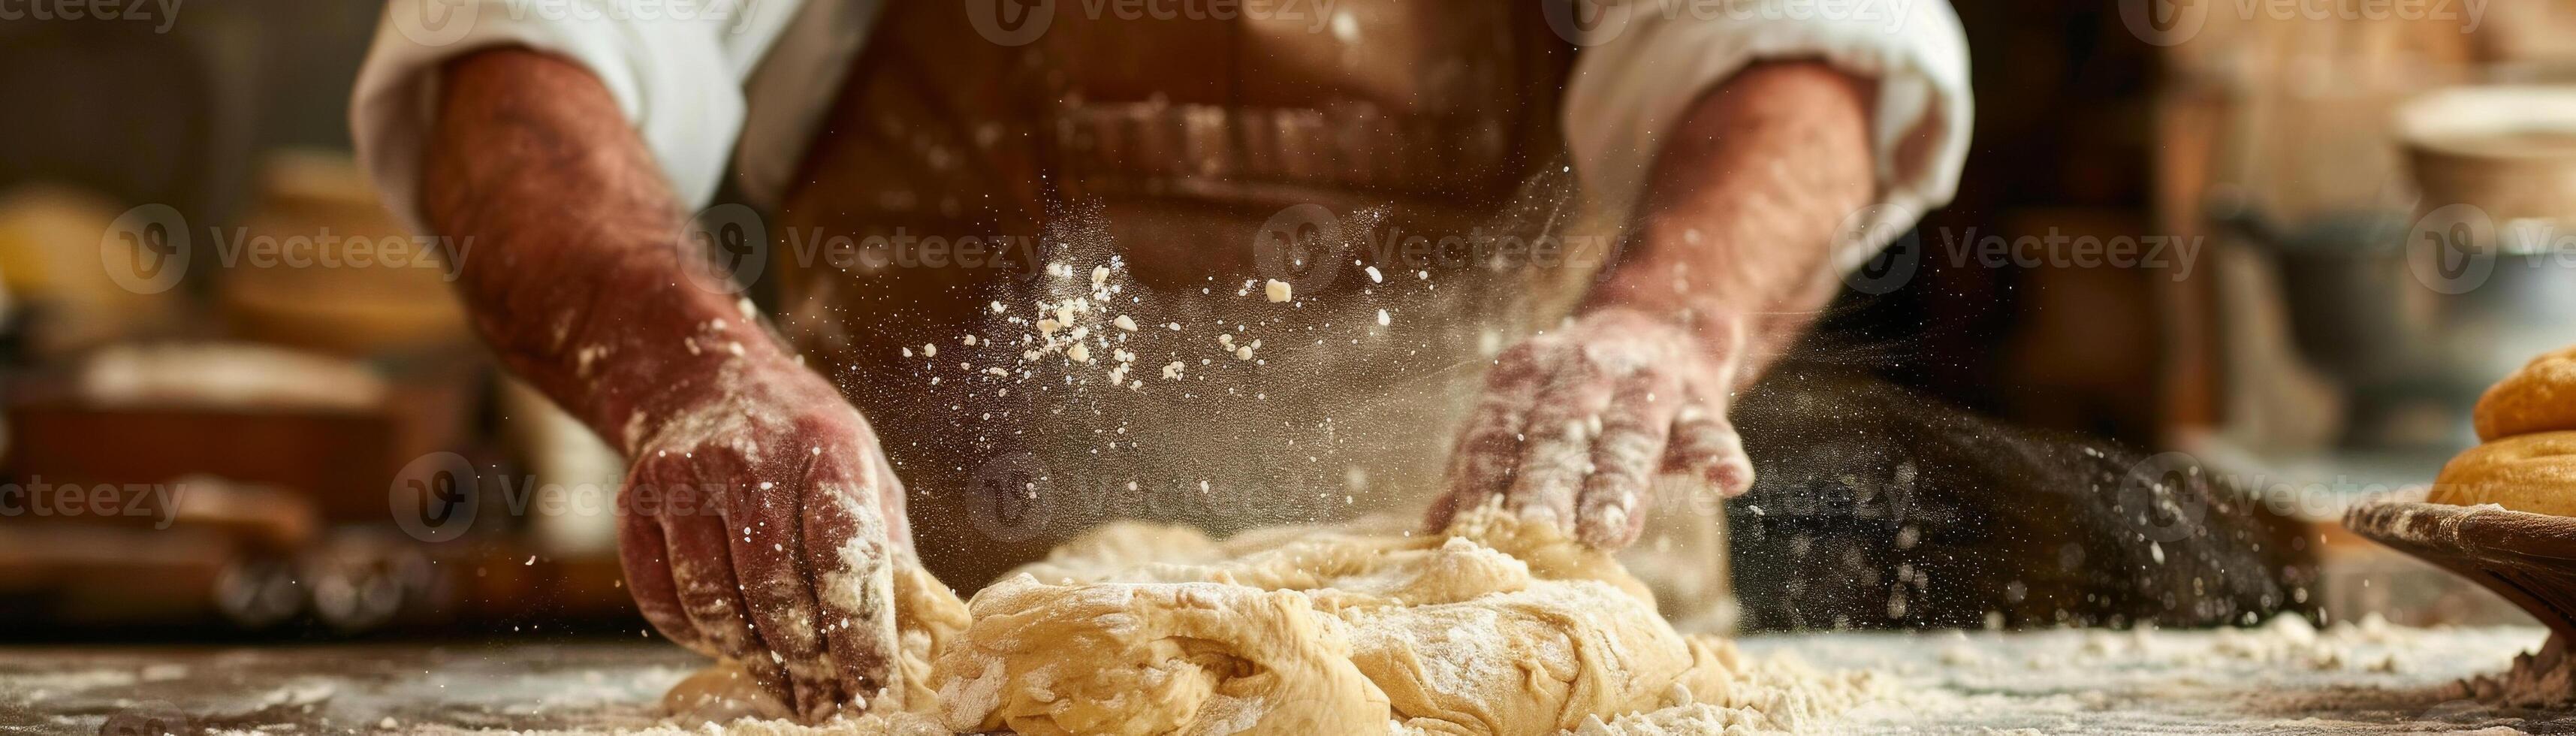 fechar-se do uma padeiro mãos trabalhando com farinha e fresco pão massa em uma de madeira superfície foto